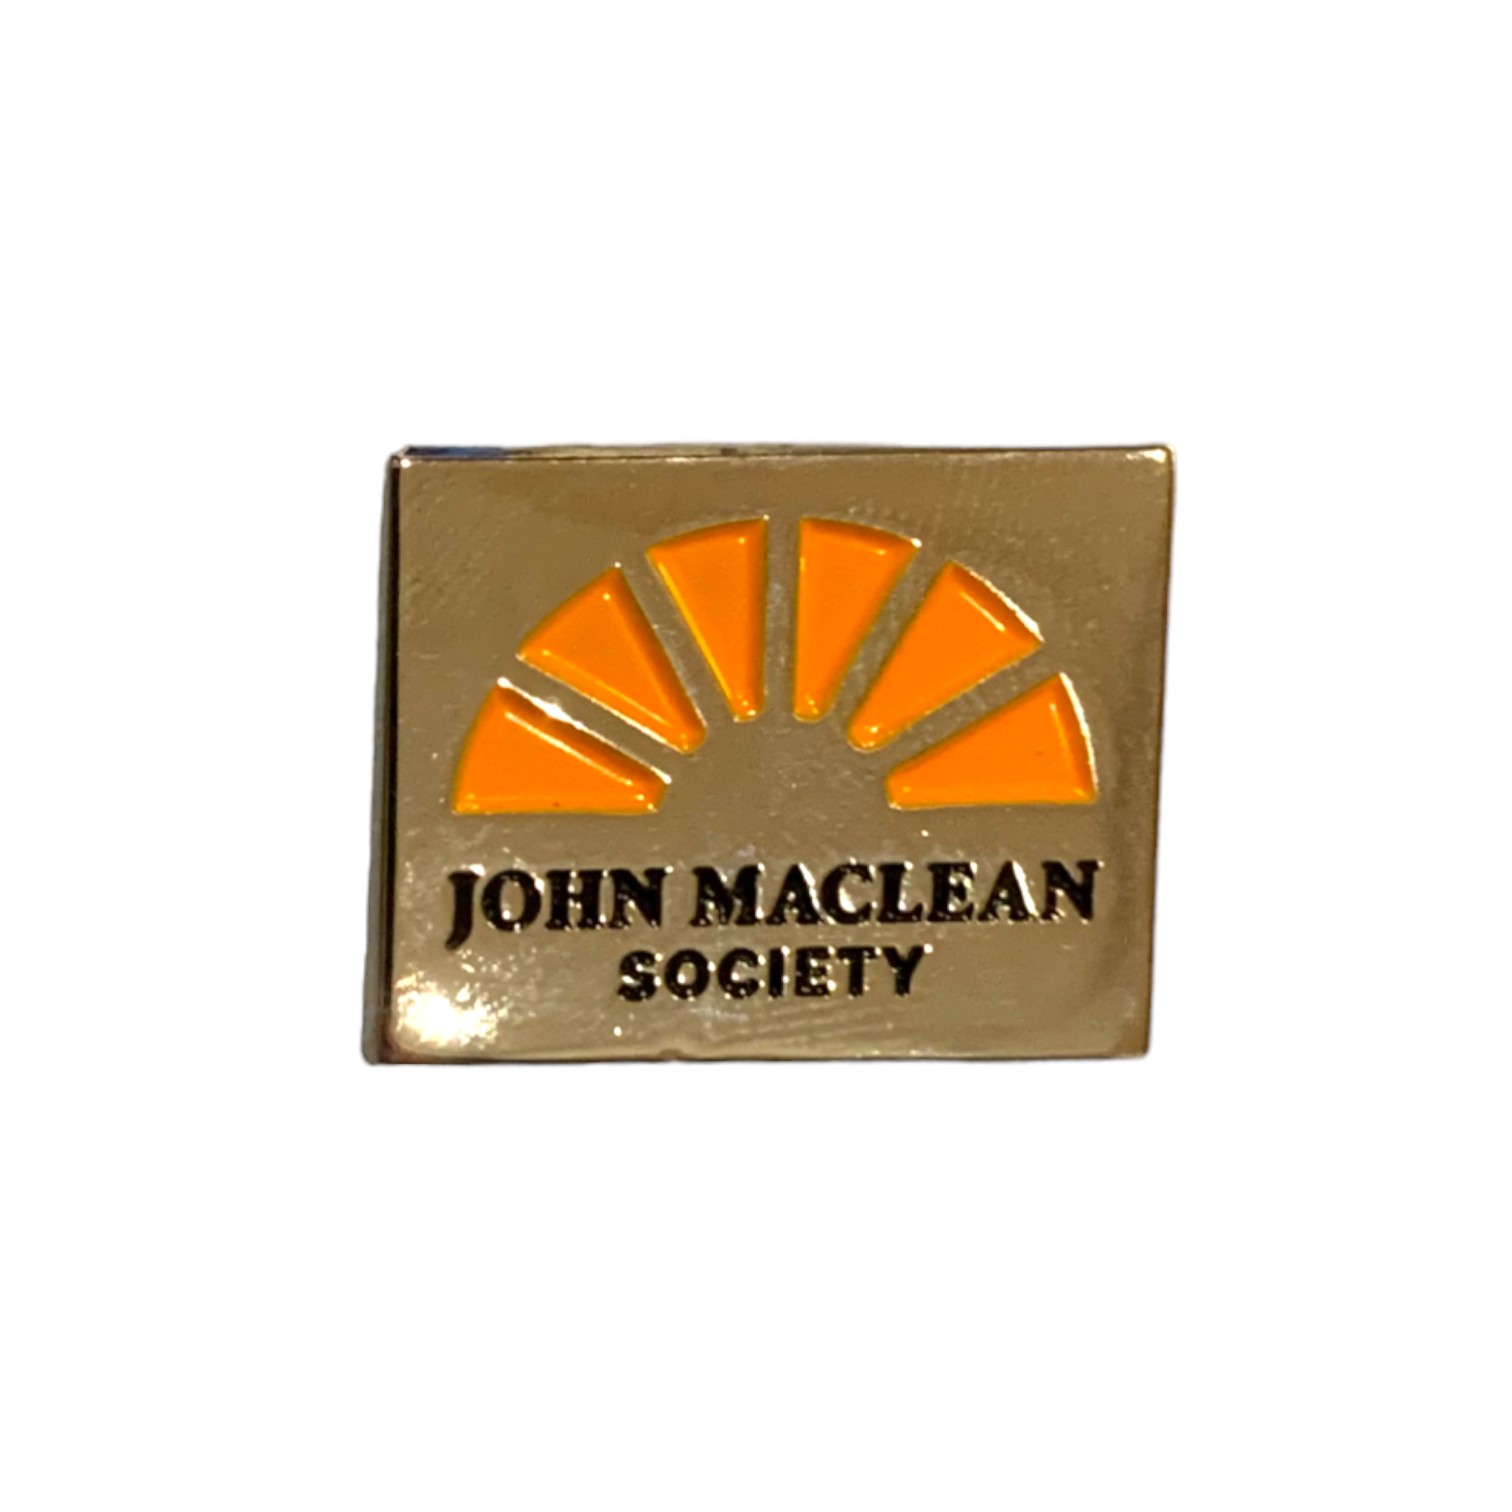 John Maclean Society Pin